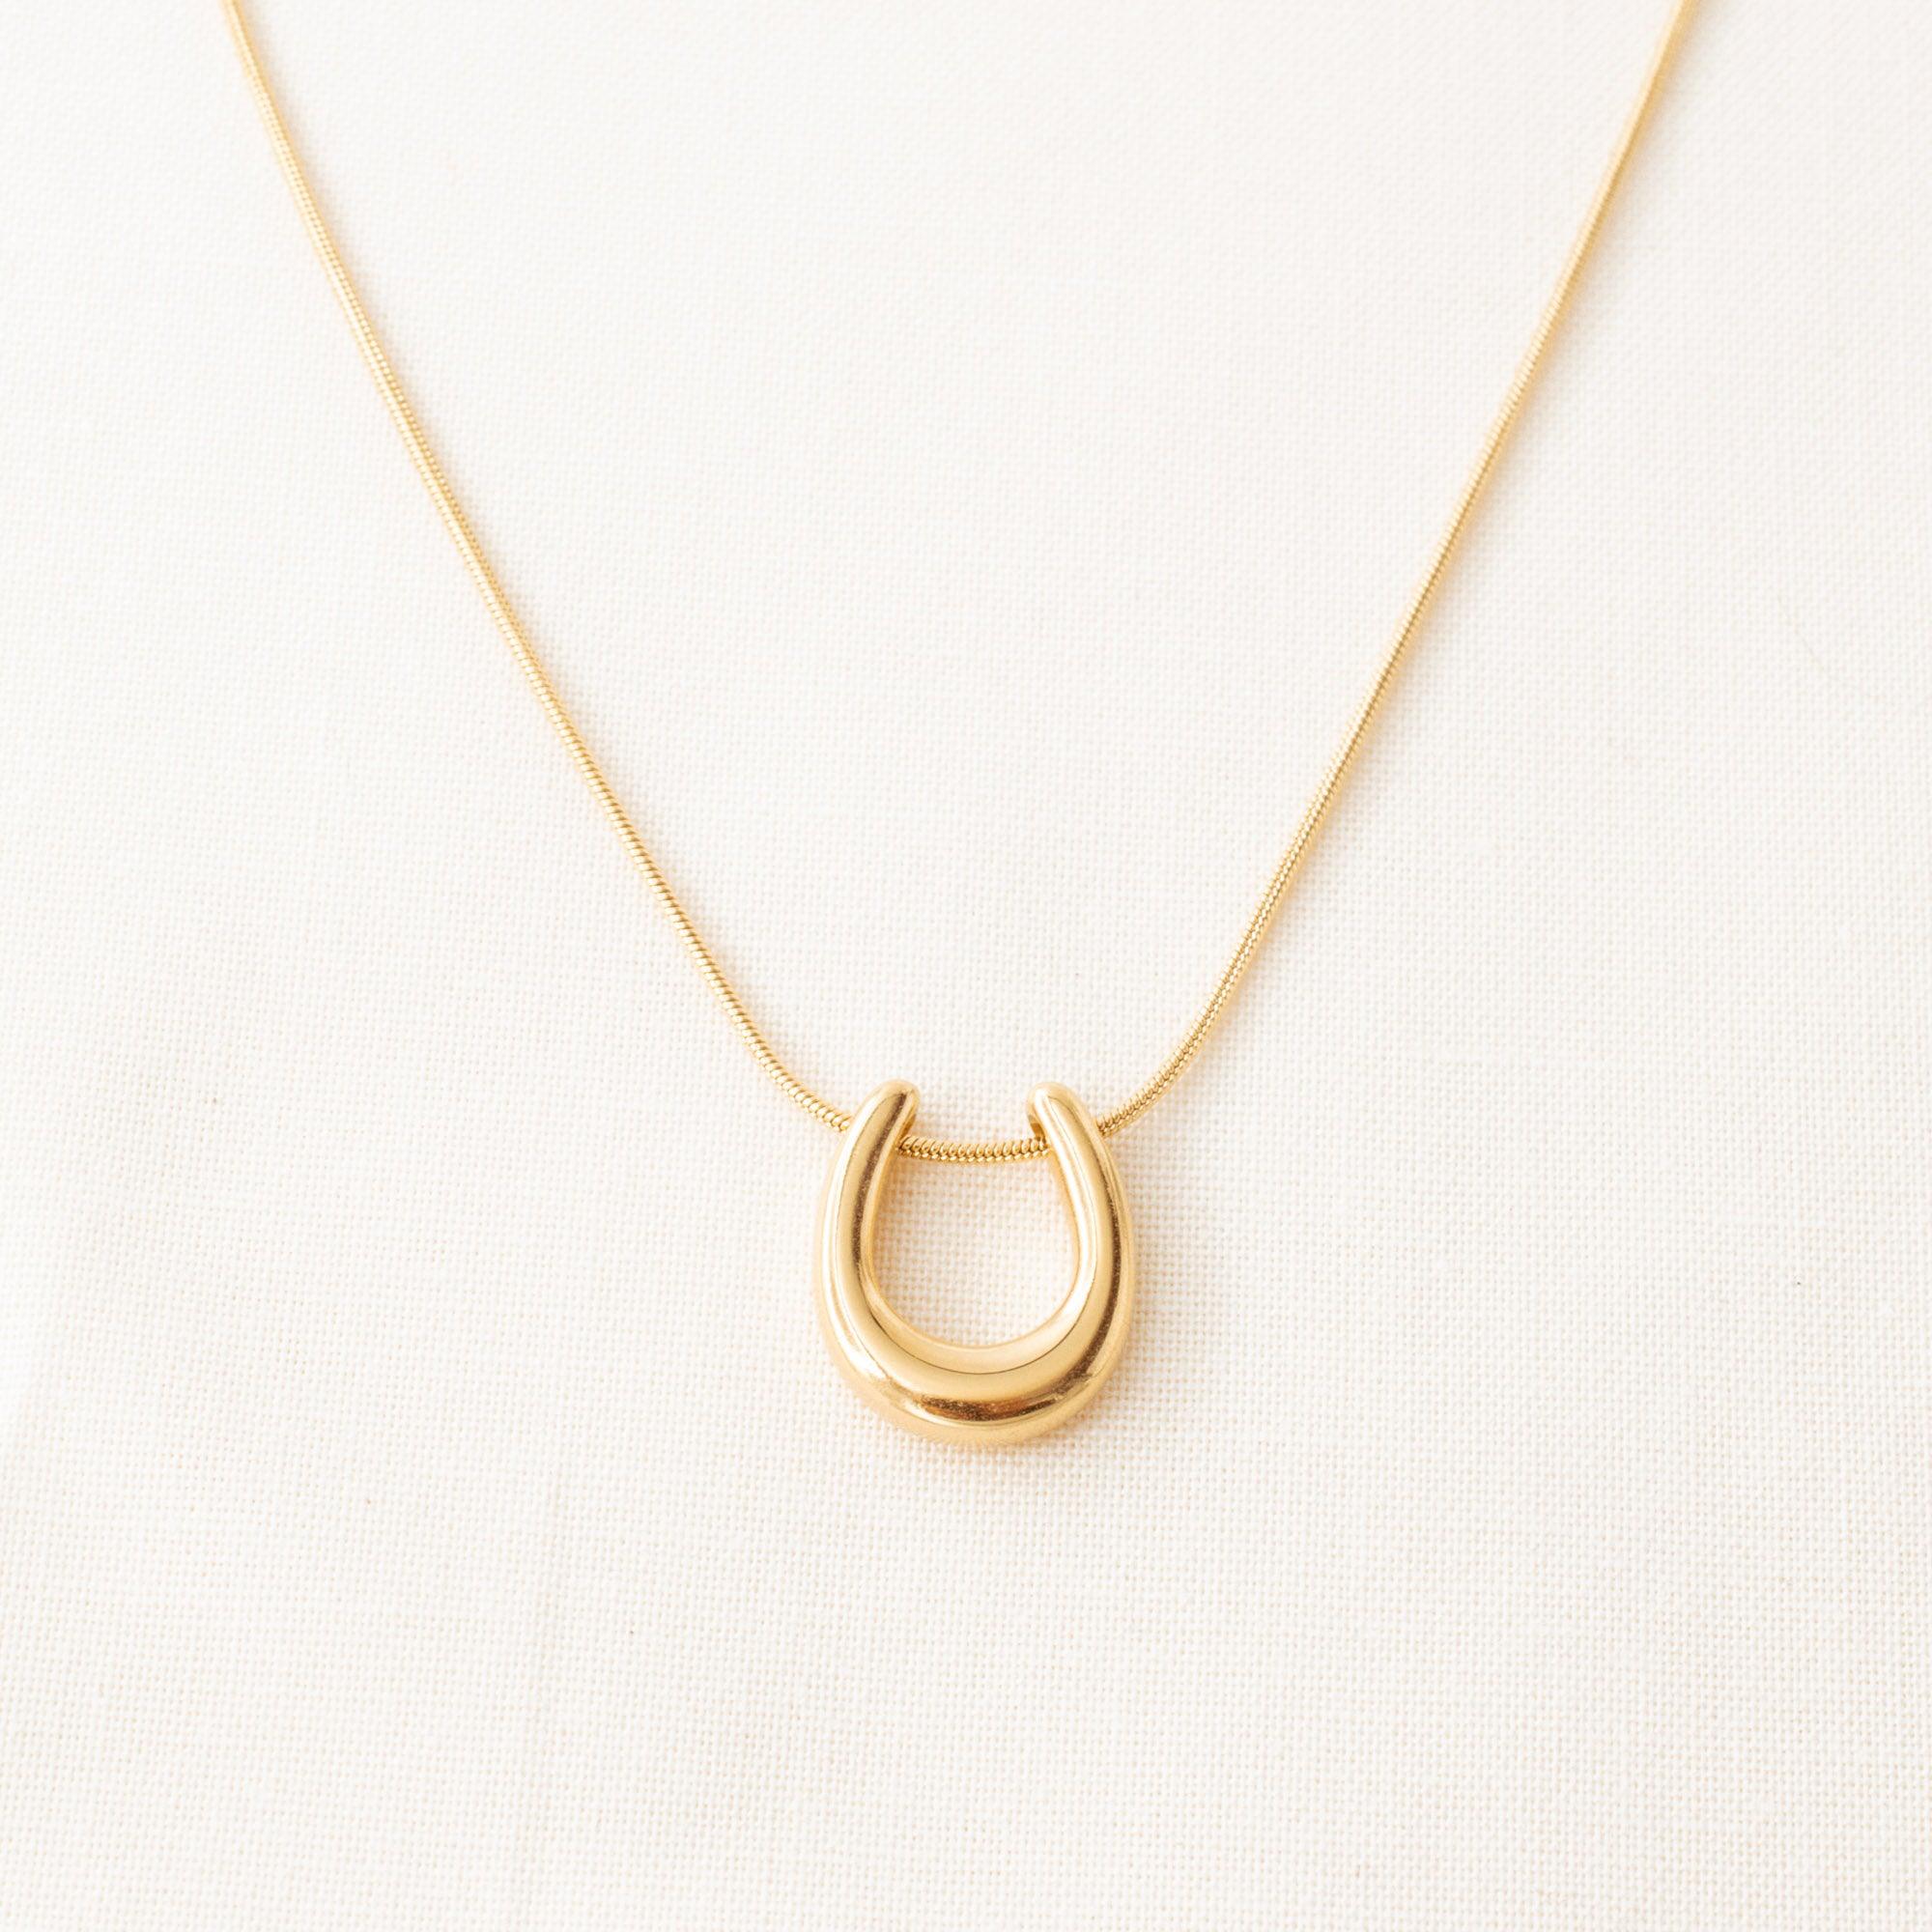 U-Shaped Pendant Necklace - avantejewel.com